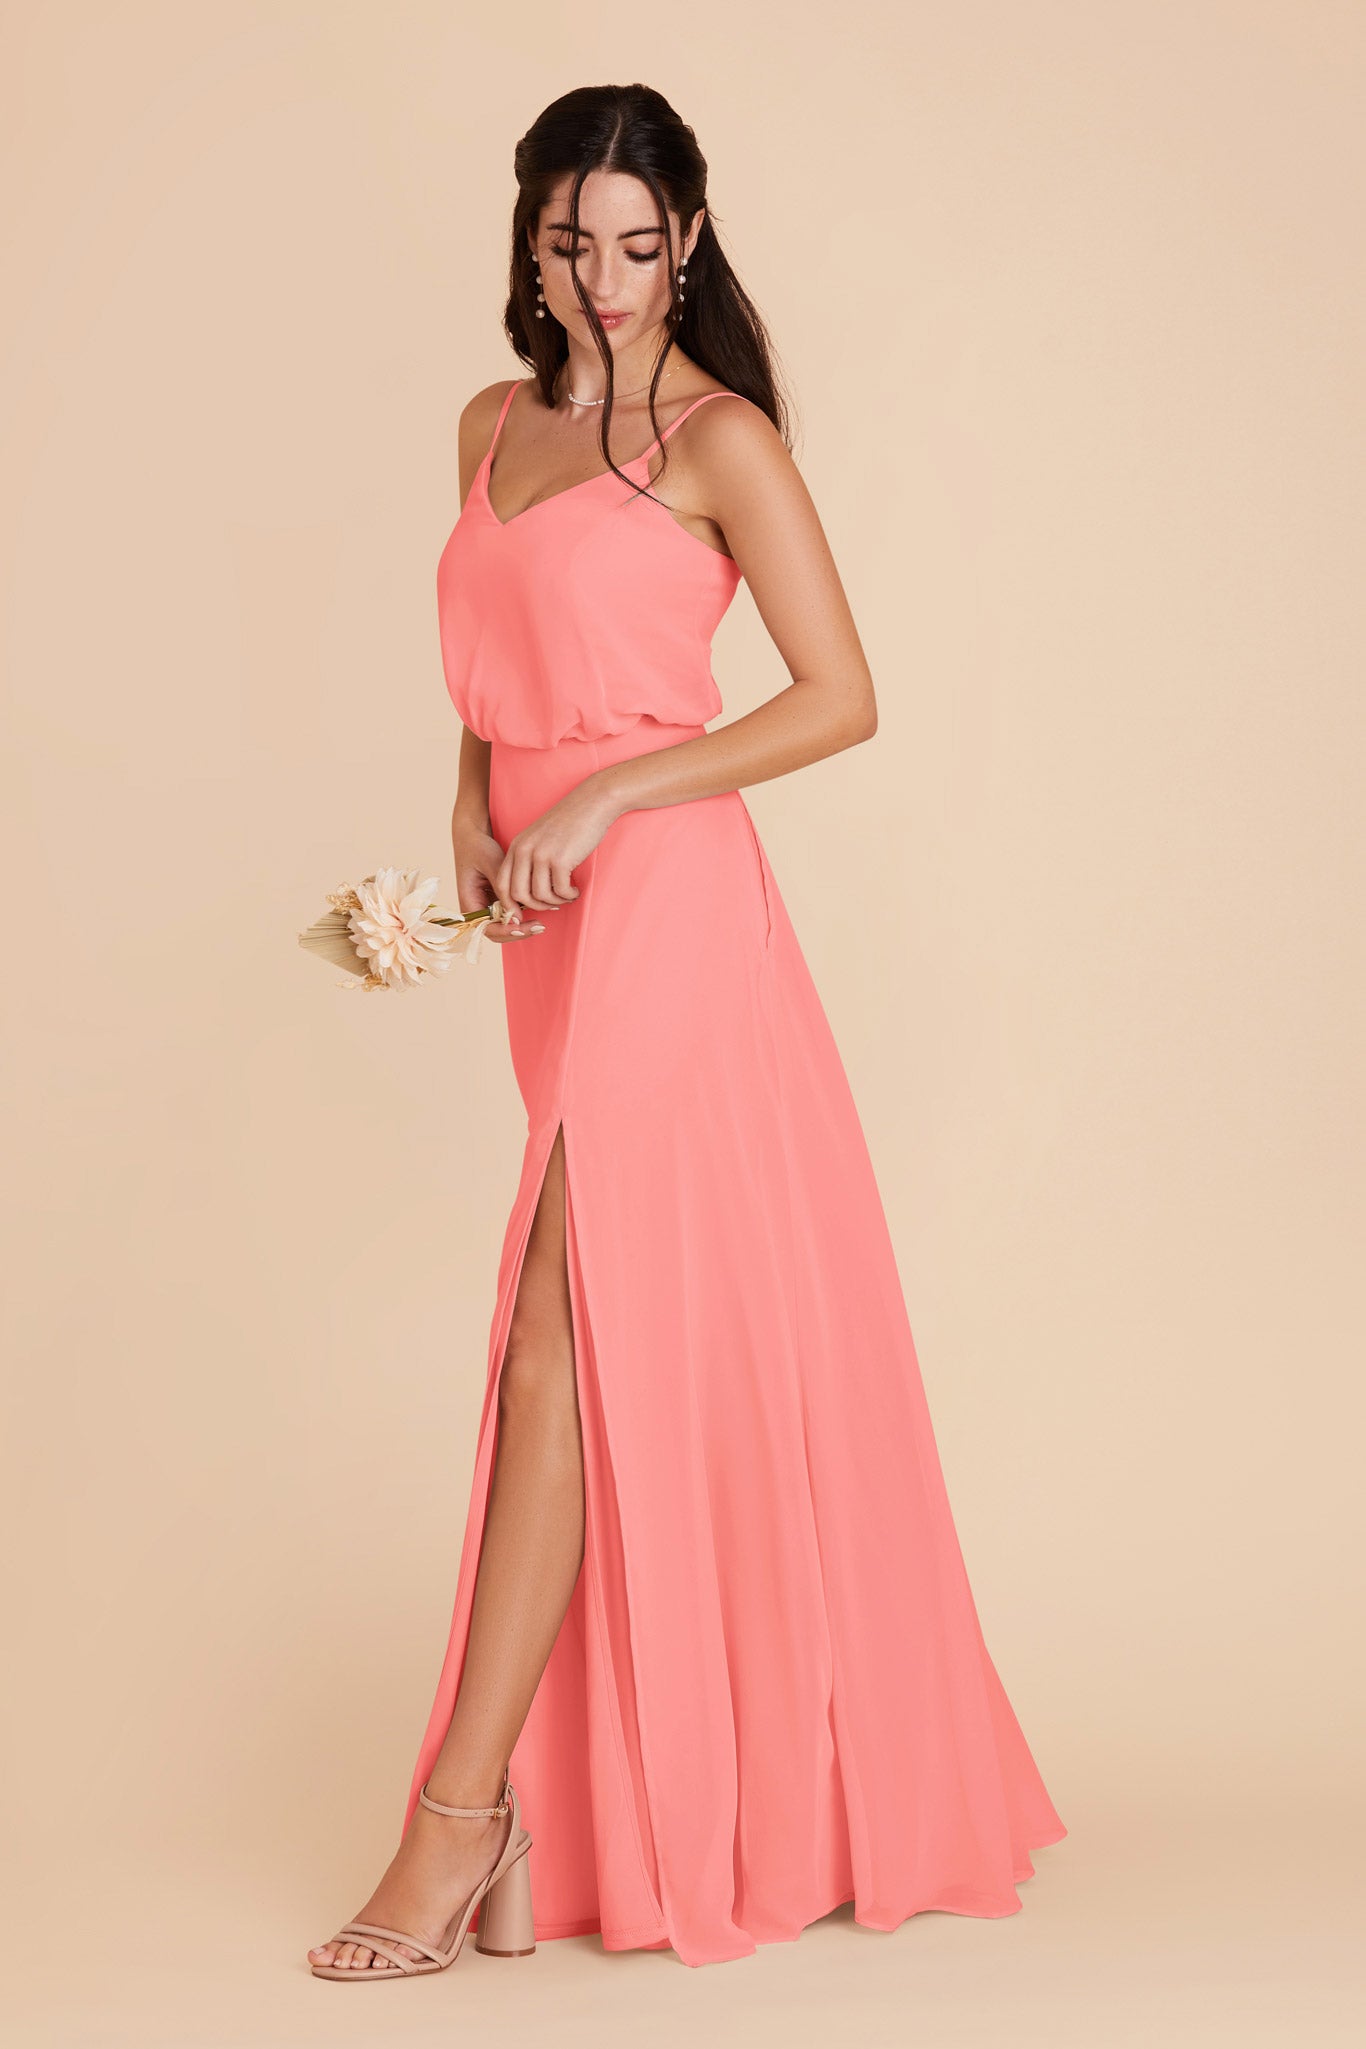 Coral Pink Gwennie Dress by Birdy Grey